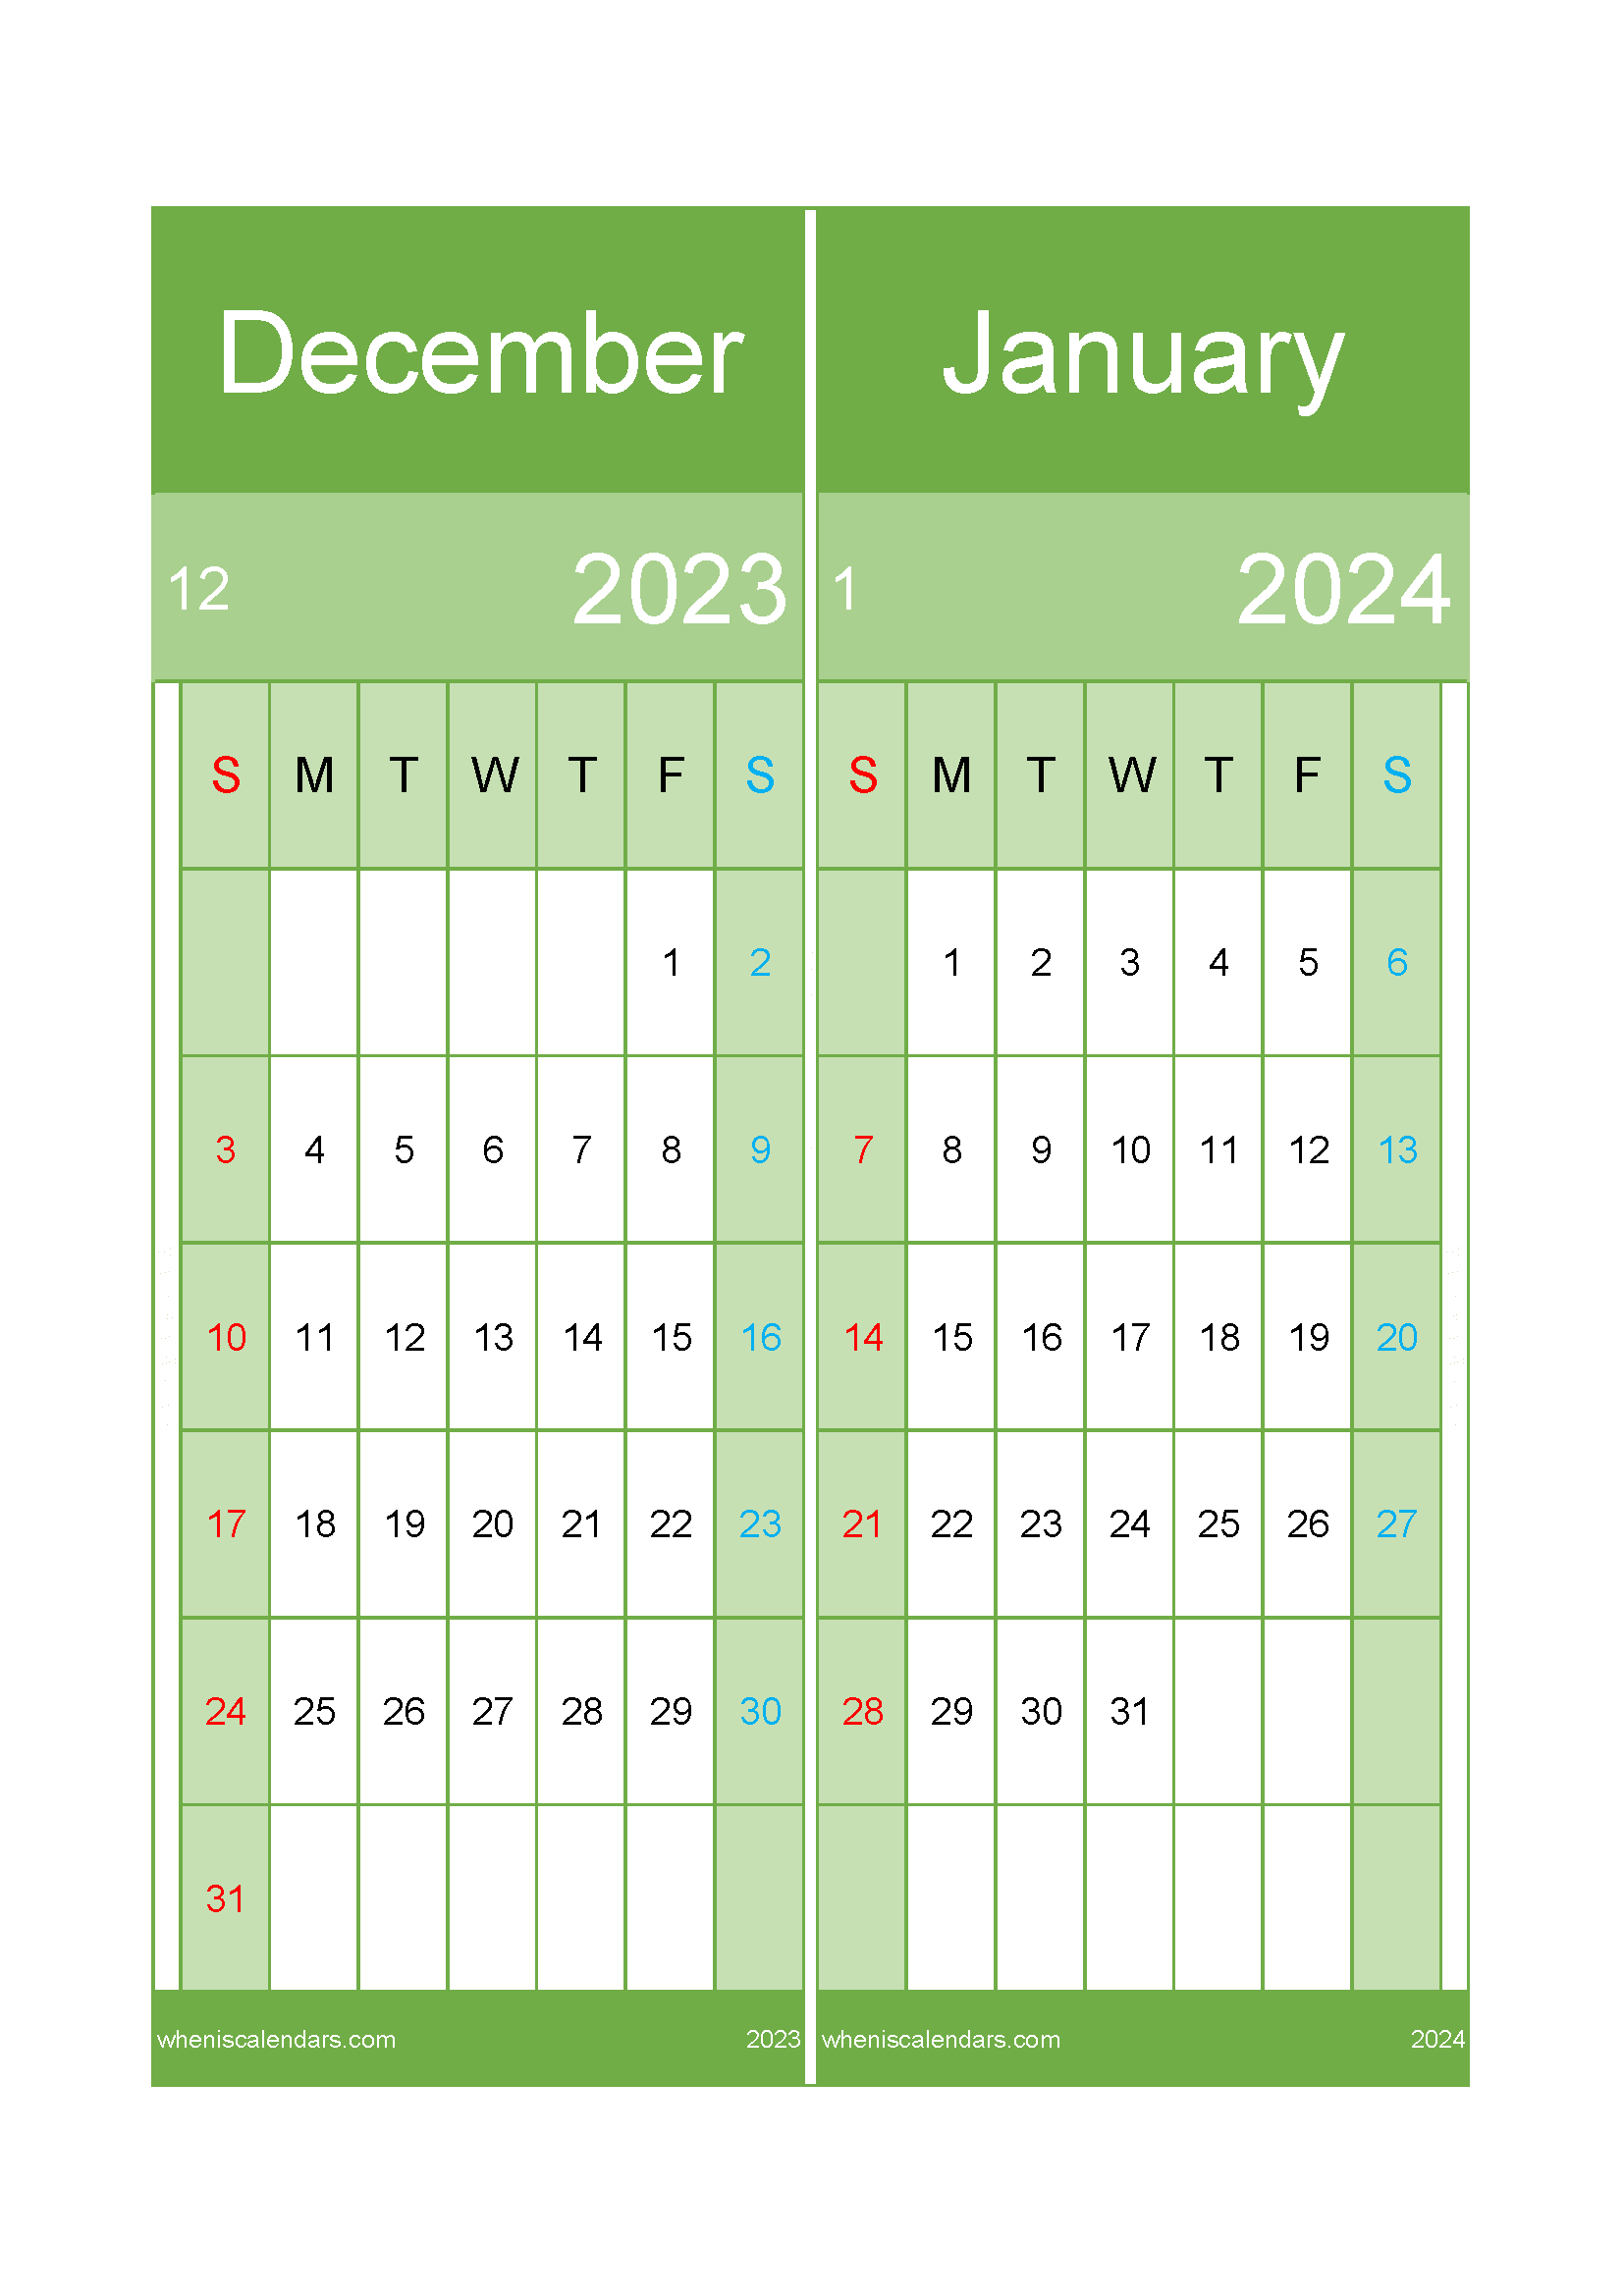 January 2024 and December 2023 calendar DJ232027